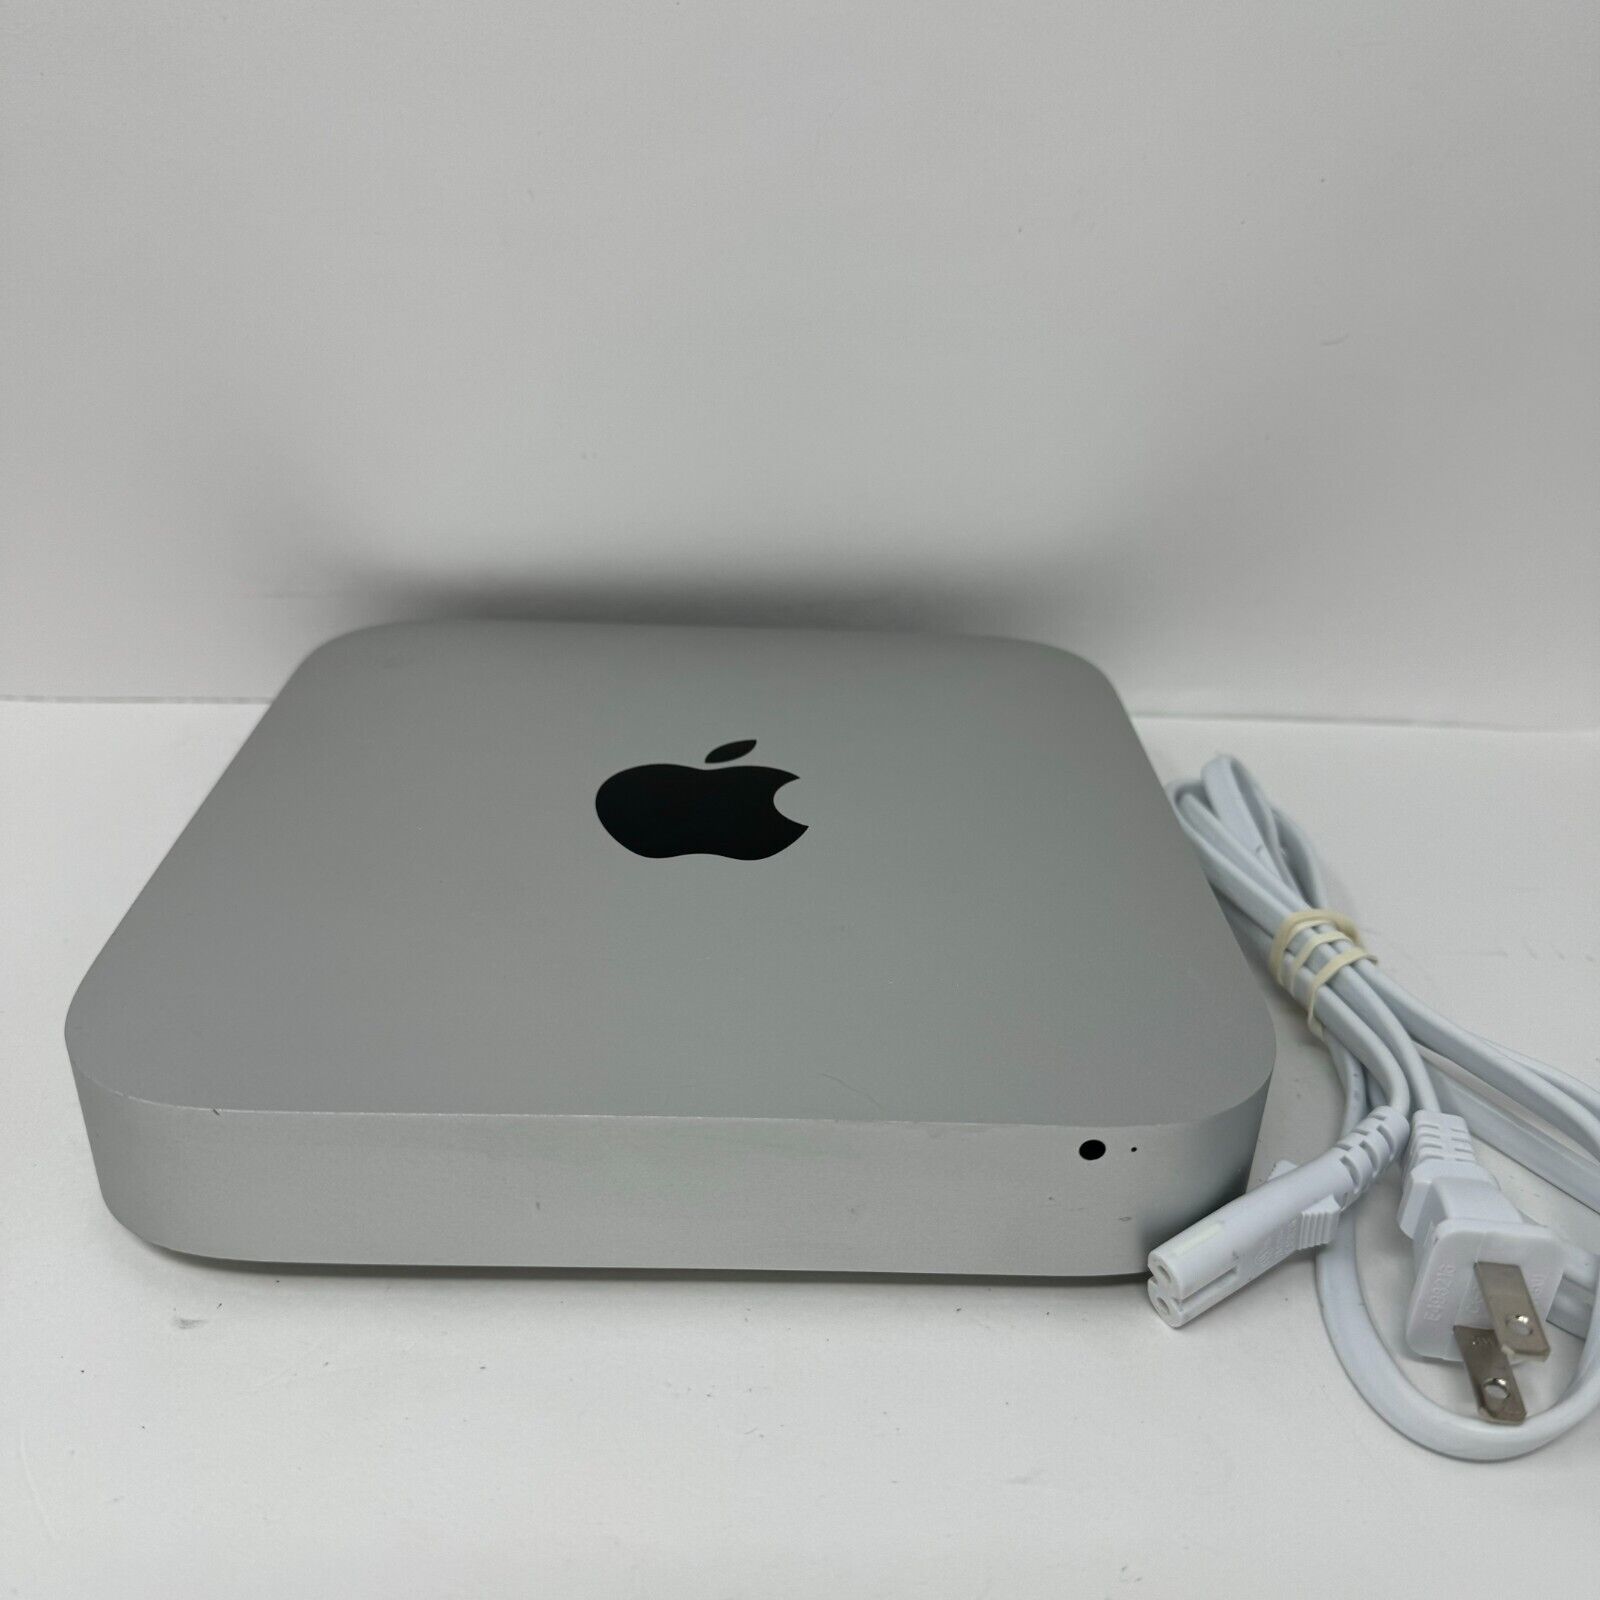 Apple Mac Mini A1347 i5 2.3GHz 128GB SSD 16GB RAM OS X High Sierra -2011